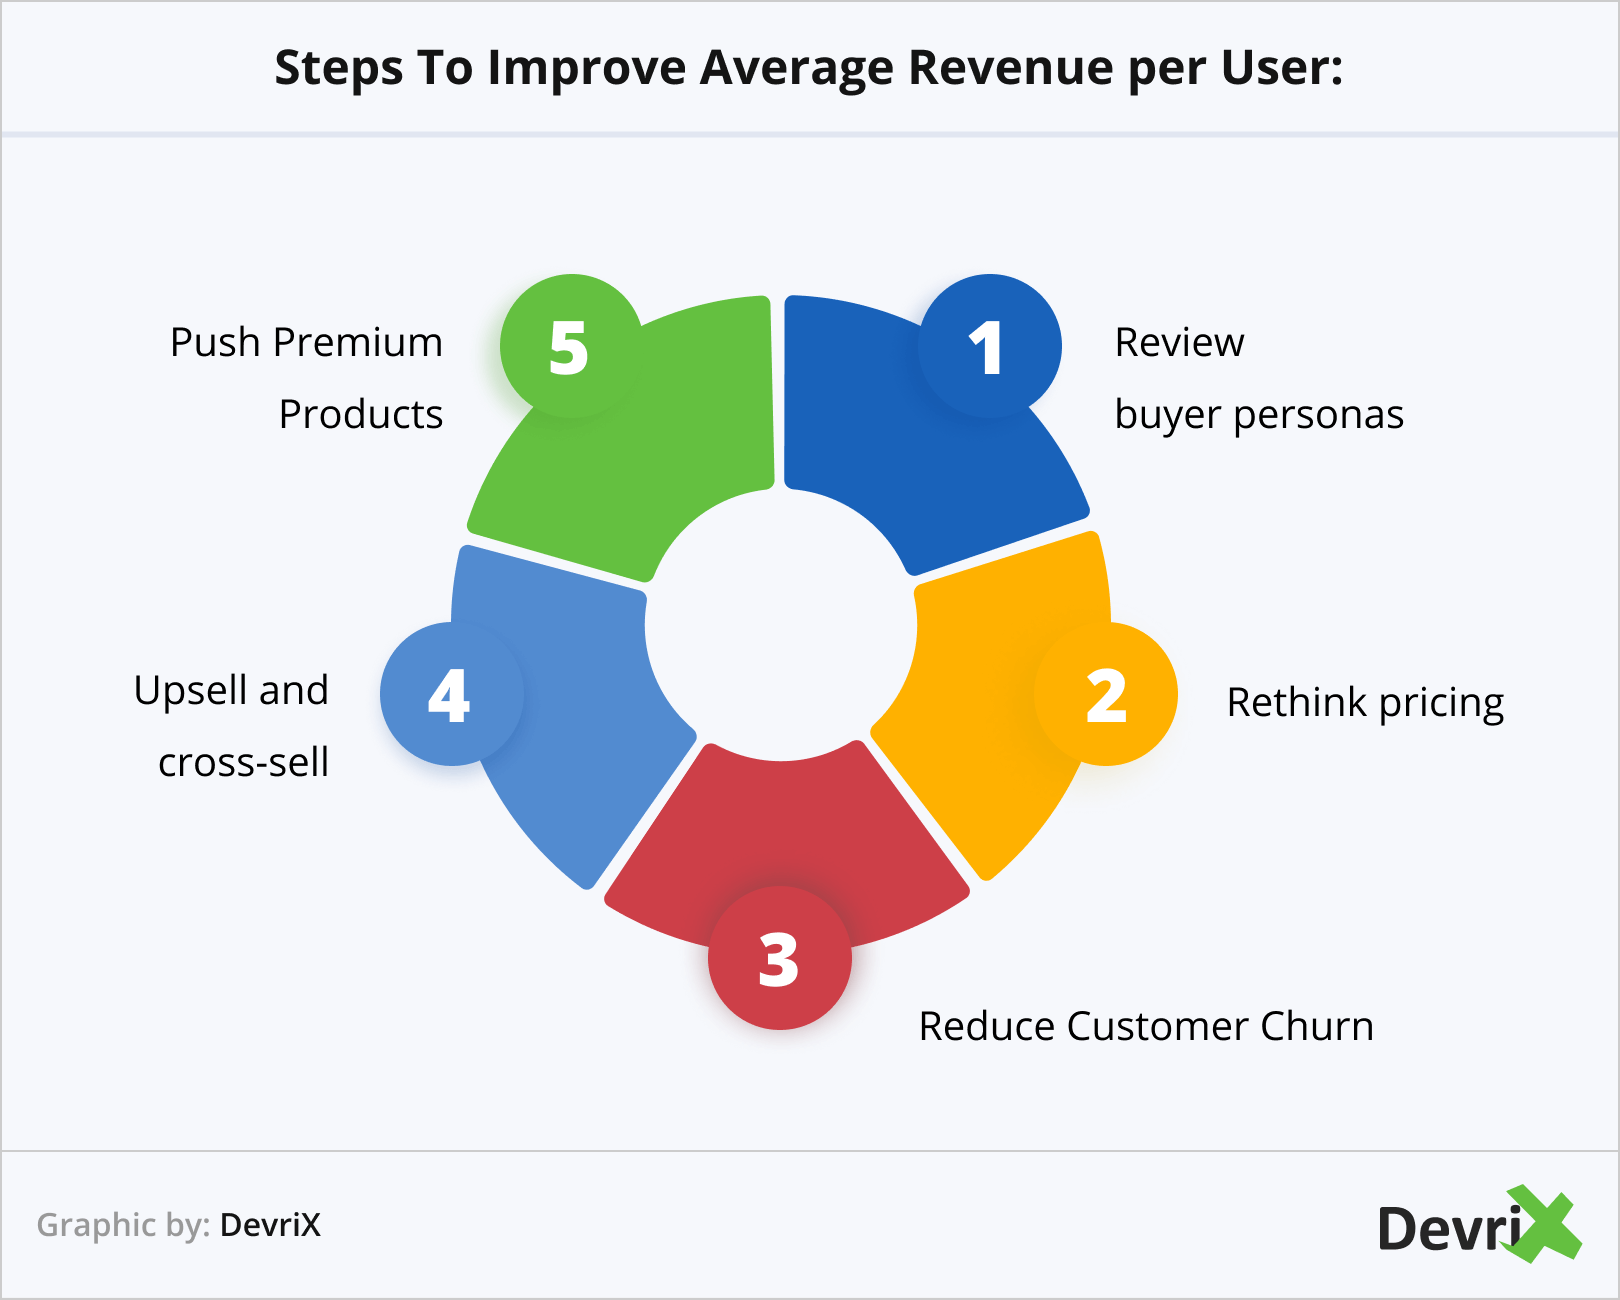 Steps To Improve Average Revenue per User